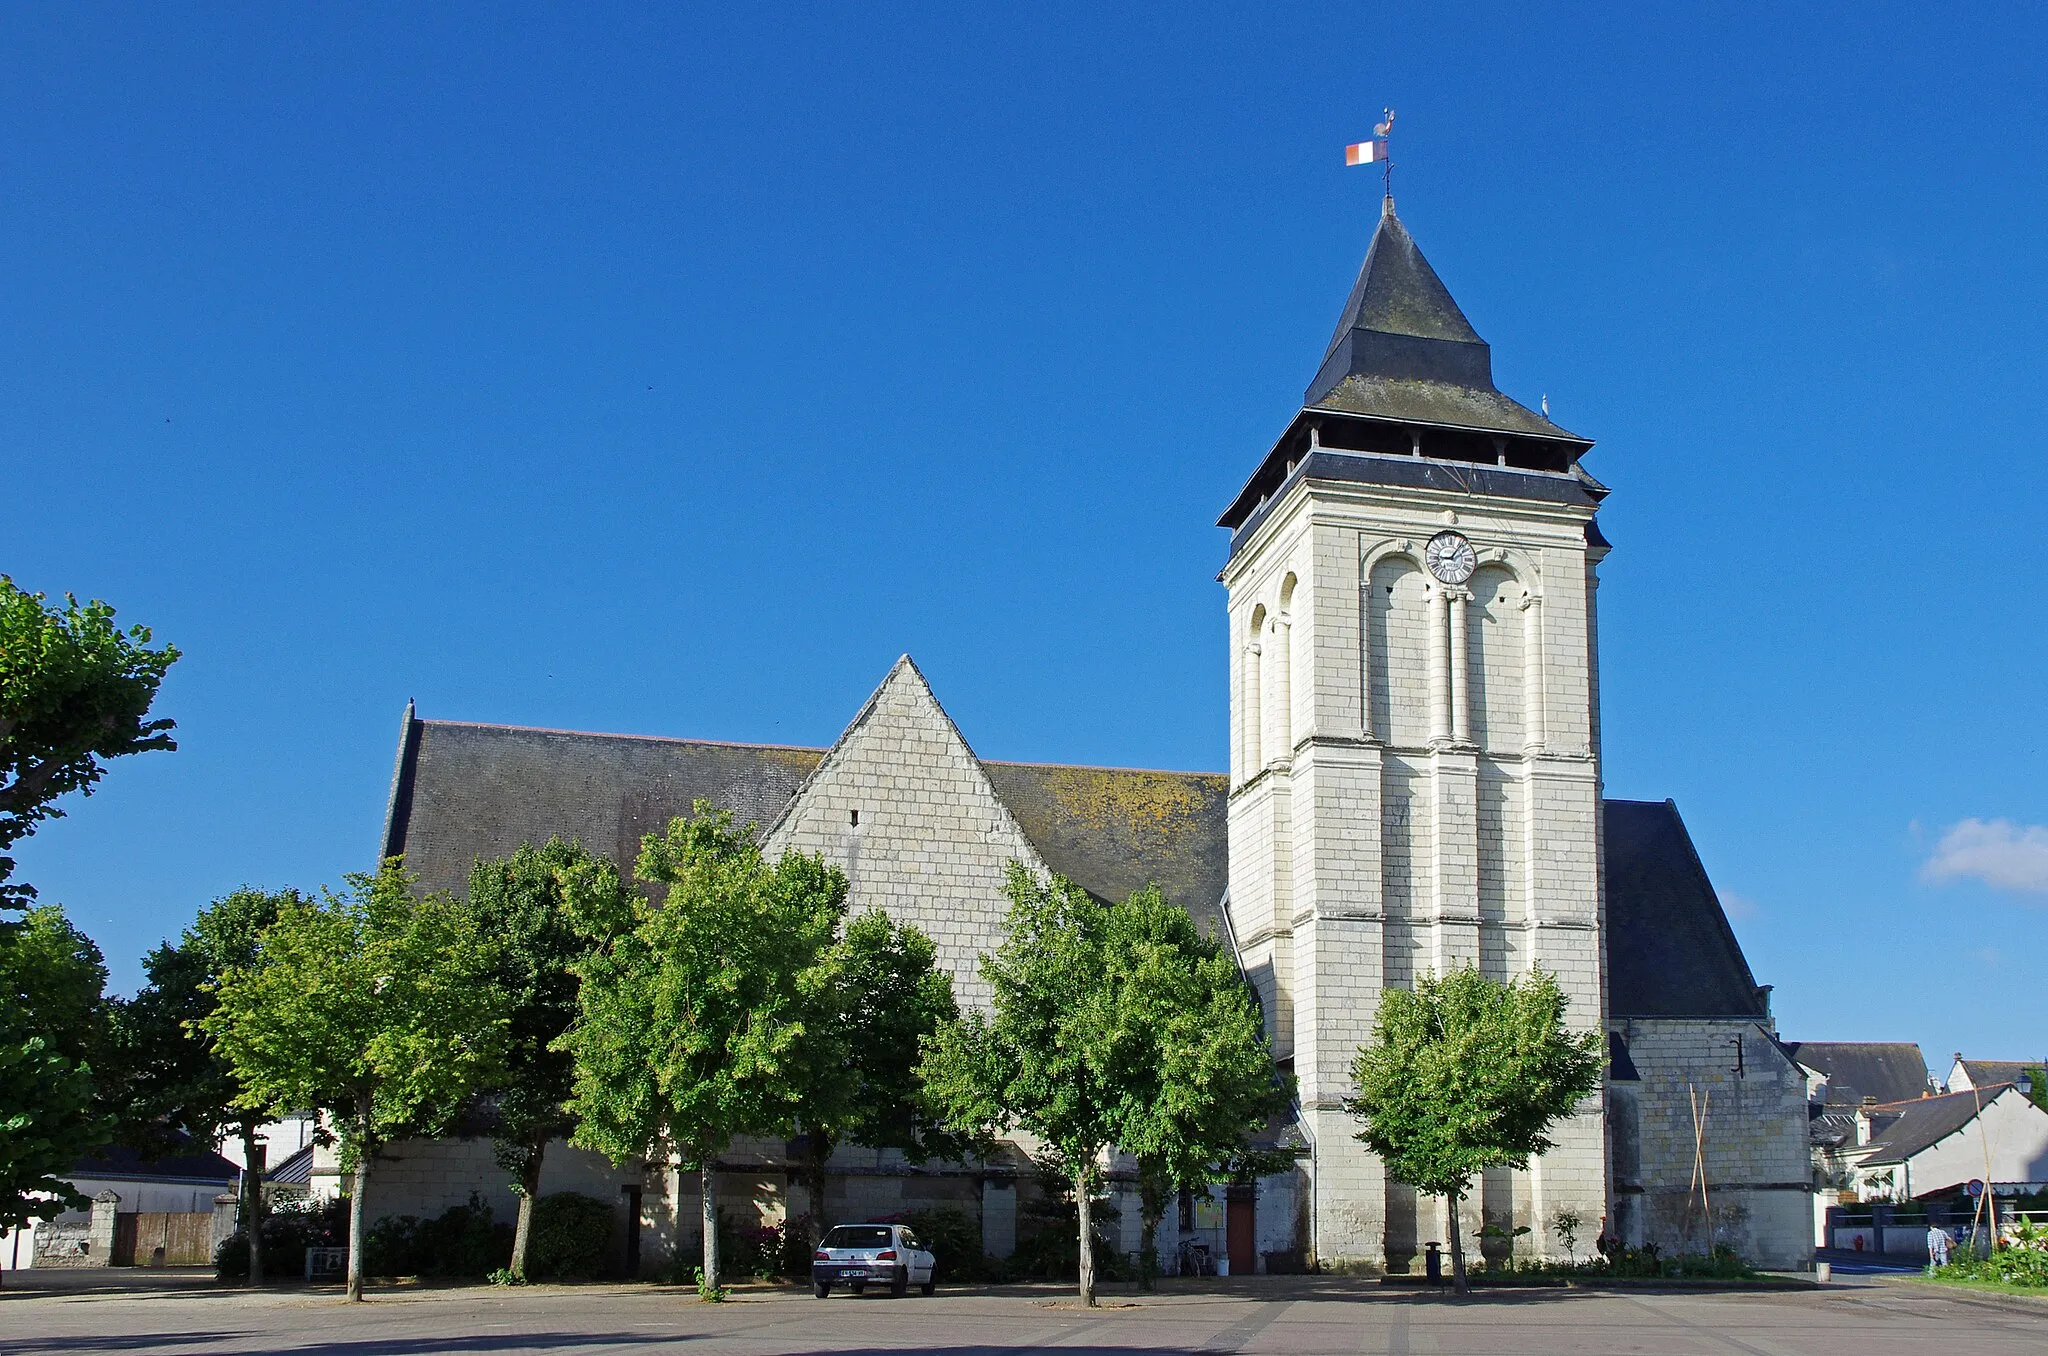 Photo showing: Les Rosiers-sur-Loire (Maine-et-Loire)
Église Notre-Dame.
L'église Notre-Dame des Rosiers-sur-Loire a été construite en 1267, après la fondation de la paroisse des Rosiers sur Loire en 1260.
C'est l'évêque d'Angers qui autorisa sa construction en raison de l'accroissement de la population.
Au XVe siècle, deux chapelles latérales, ont été ajoutées ainsi qu'une petite sacristie au sud-est.
Le clocher a été érigé dans la première moitié du XVIe siècle (la date de 1538 peut encore se voir sur un cartouche de l’avant dernière fenêtre) par l'architecte angevin Jean Delespine*.  De style renaissance, il est composé de deux tours carrées, dont la plus petite et la plus ouvragée est la tour d'escalier.  il a été  repris au 19e siècle et doté d’une galerie balcon depuis laquelle on peut profiter d’une vue panoramique.

Jean Delespine (1505-1576), connu aussi pour avoir construit le clocher de l'église de Beaufort-en-Vallée et le lanternon central de la cathédrale d'Angers.